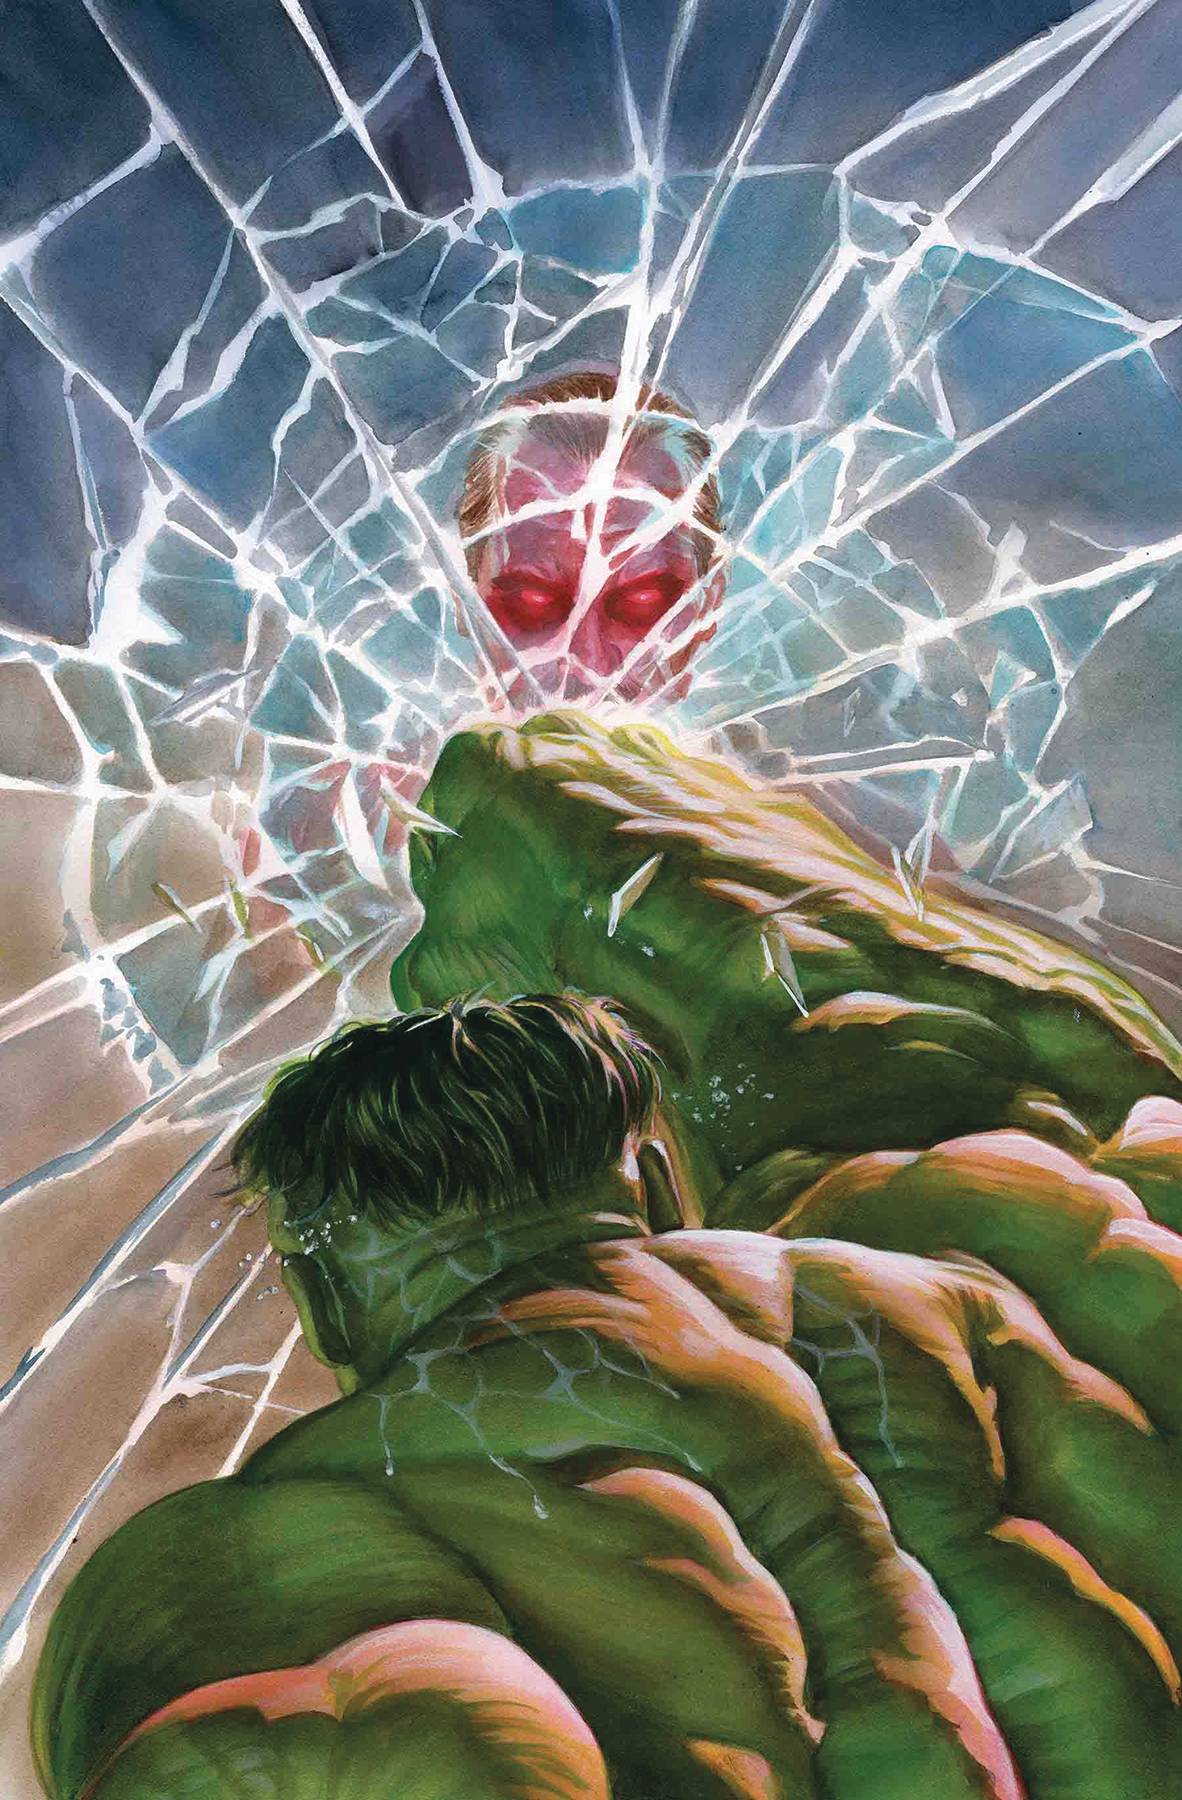 Immortal Hulk #6 (2018)